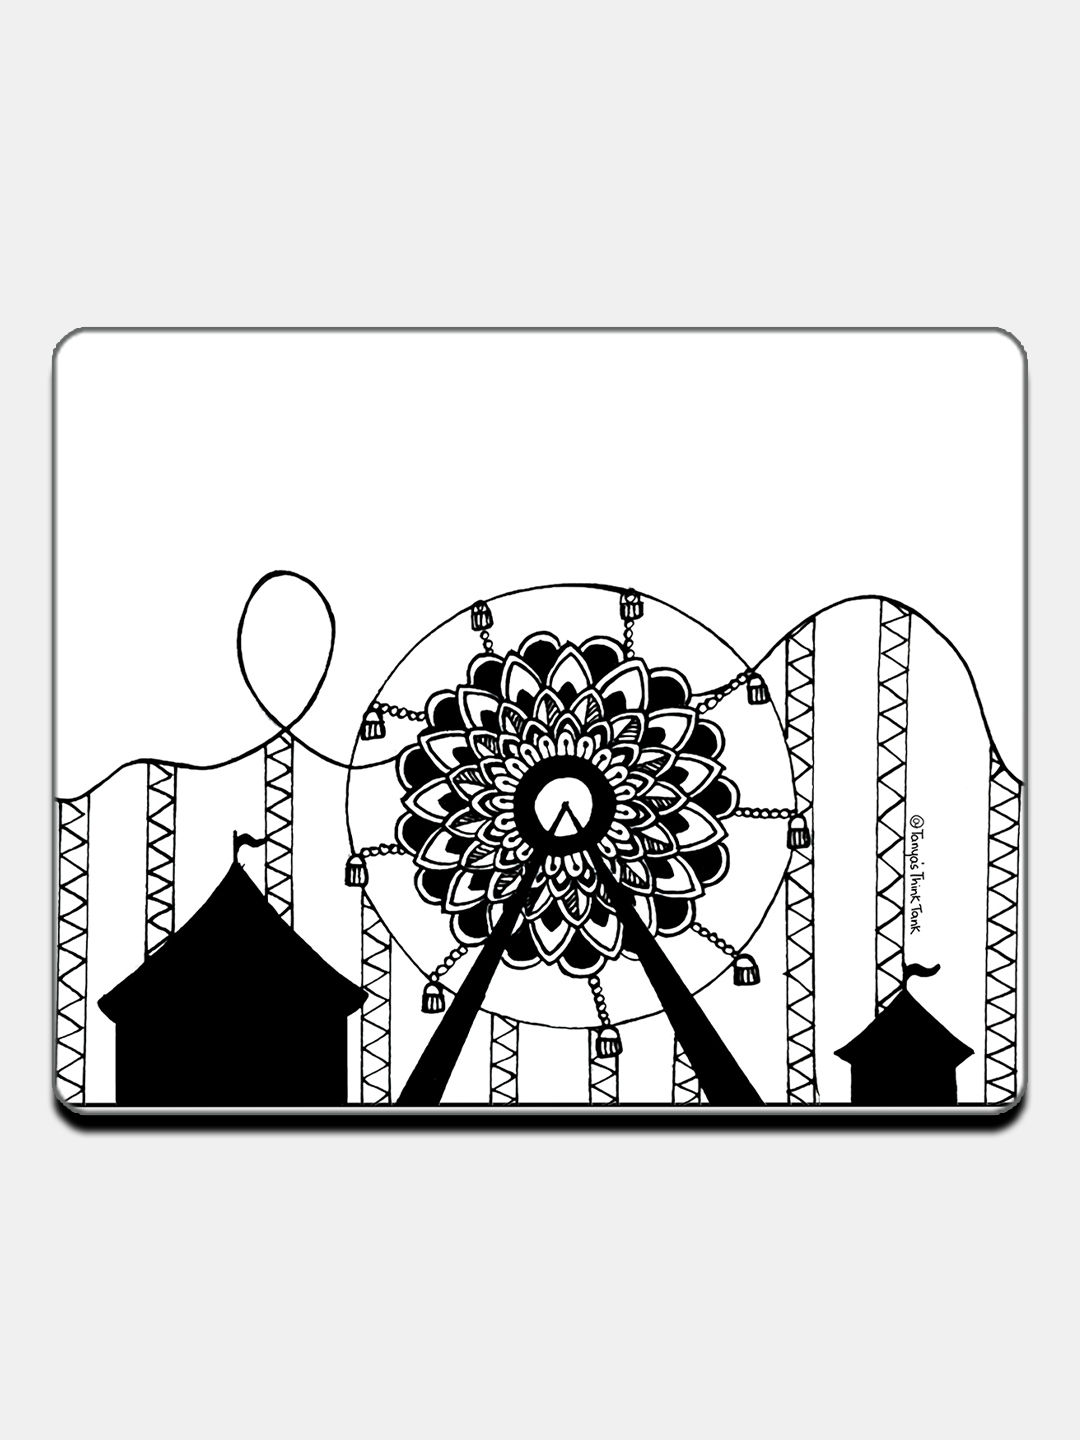 Buy Ferris Wheel - Fridge Magnets Fridge Magnets Online